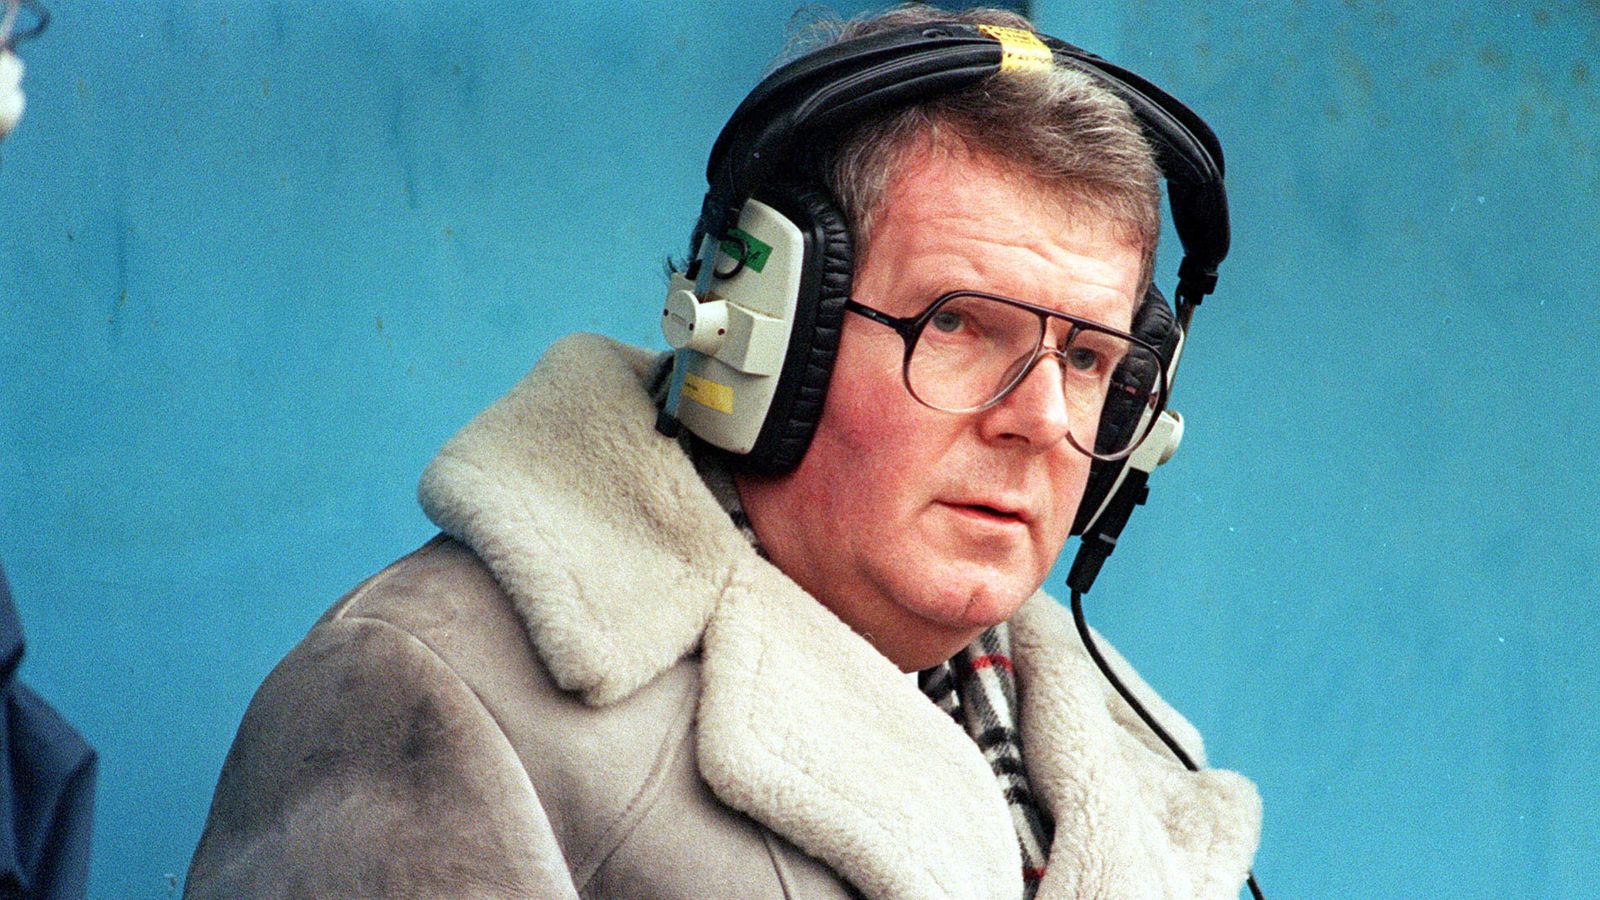 John Motson, legendary BBC football commentator, dies aged 77